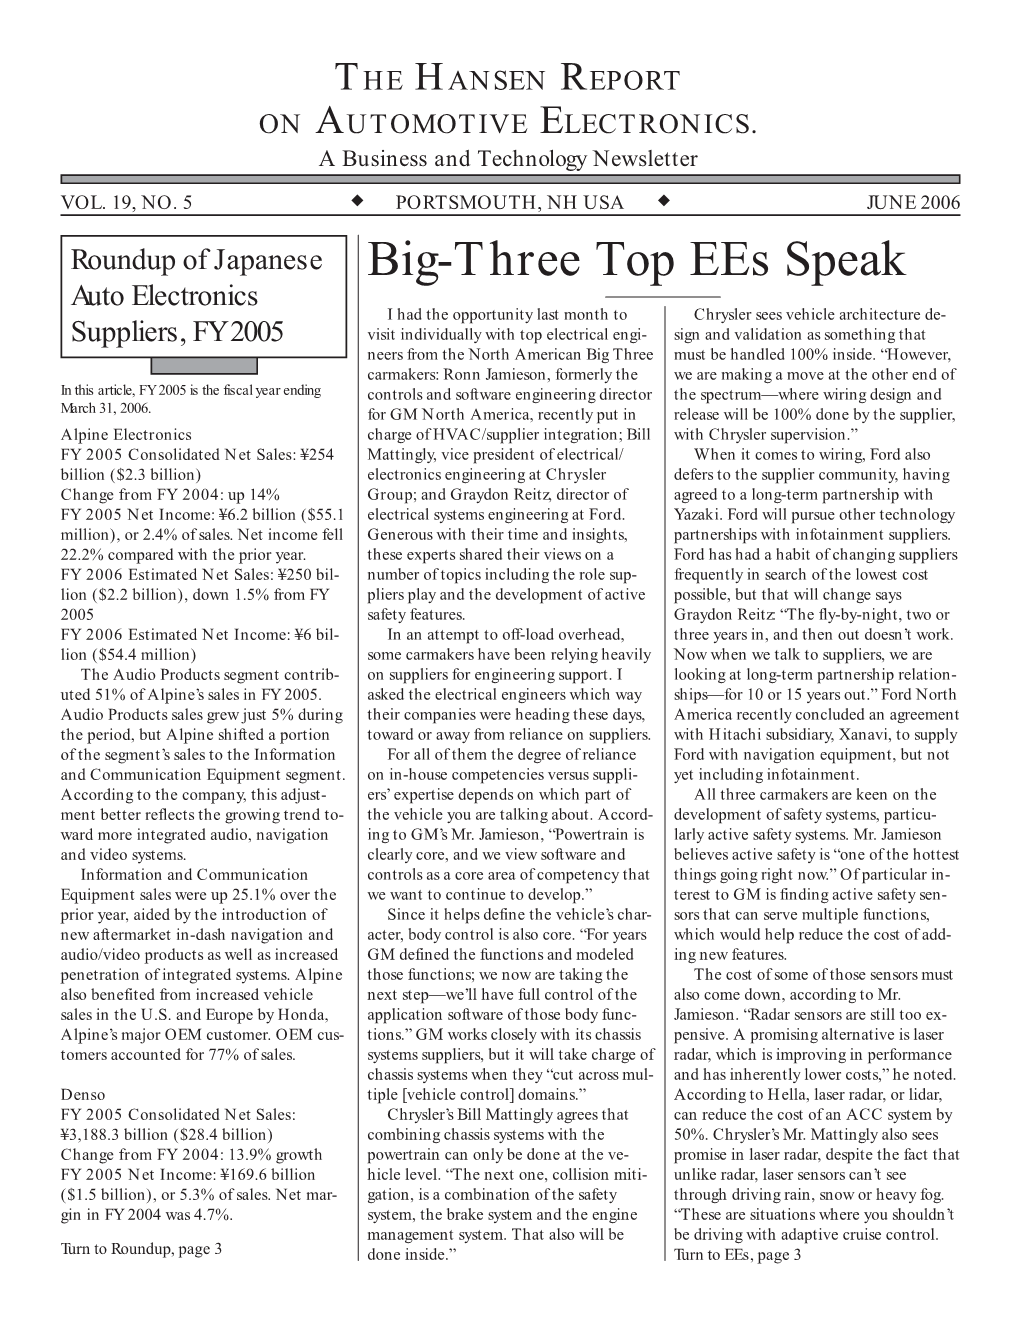 Big-Three Top Ees Speak